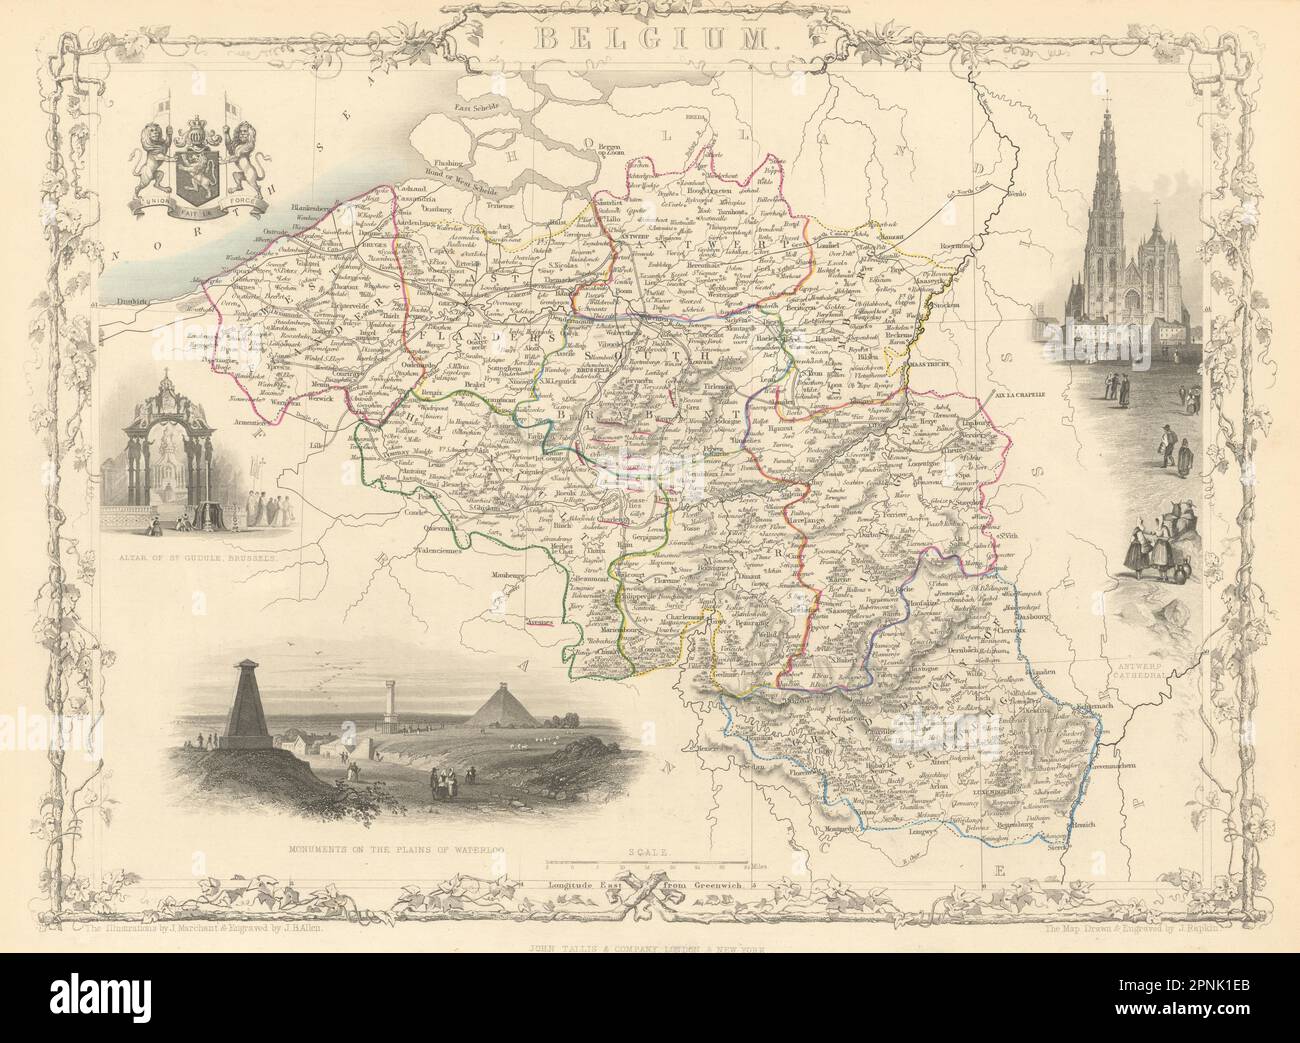 BELGIEN und Luxemburg. Napoleonische Schlachtfelder markiert. KARTE VON TALLIS & RAPKIN 1851 Stockfoto